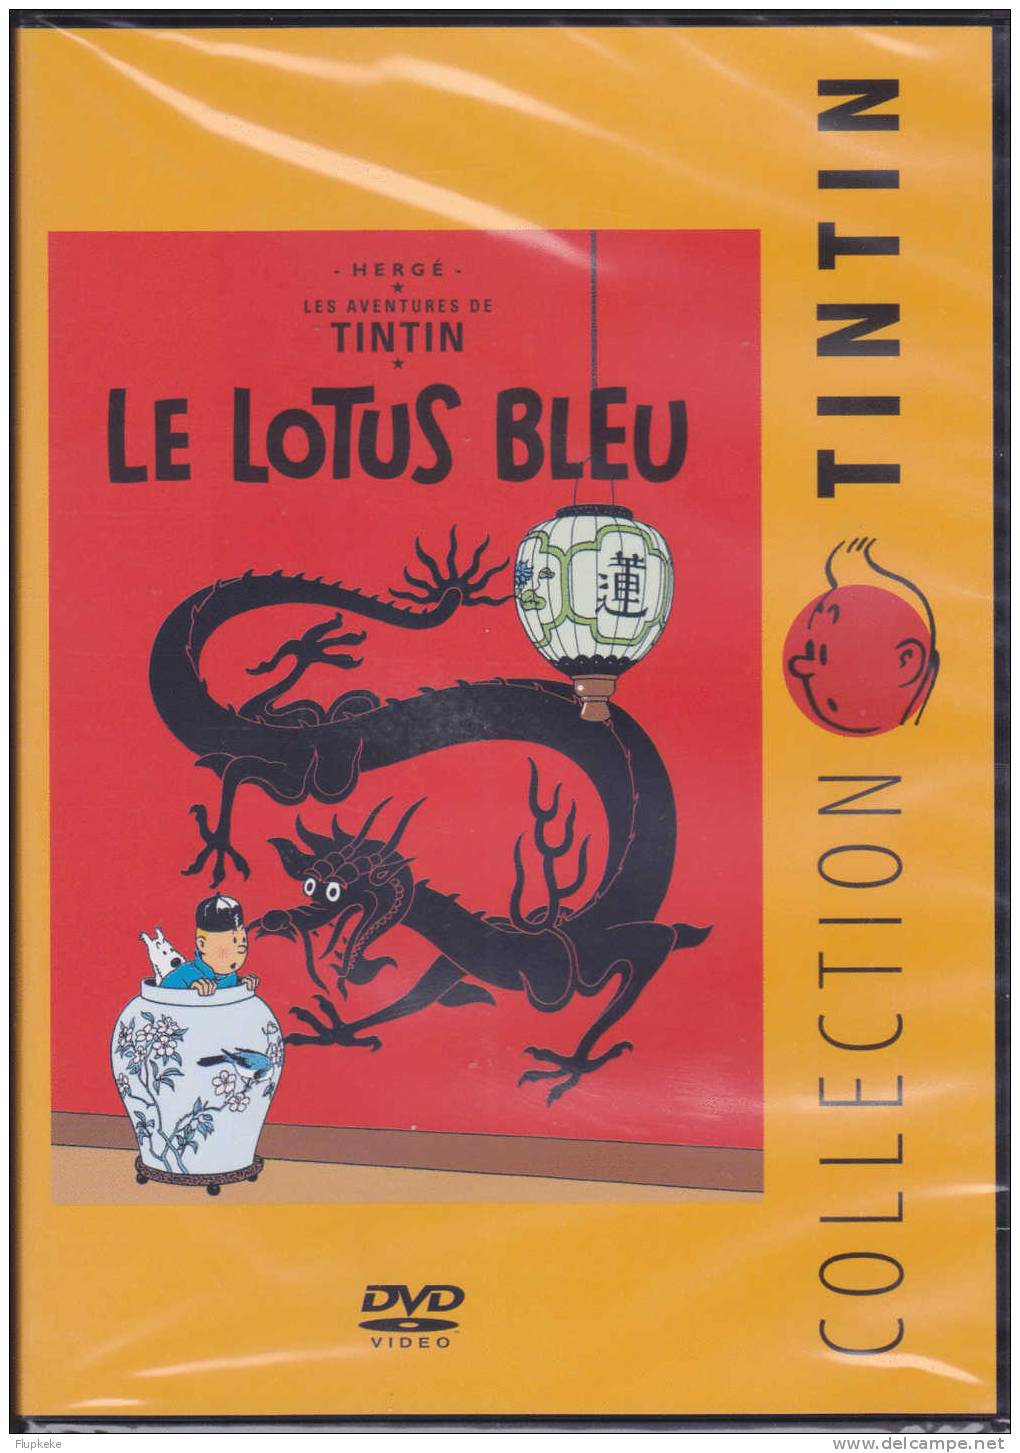 Dvd Zone 2 Le Lotus Bleu Collection Tintin Version Française Neuf Et Scellé Avec Livret Tout Savoir 01 Citel Vidéo 2010 - Action, Adventure